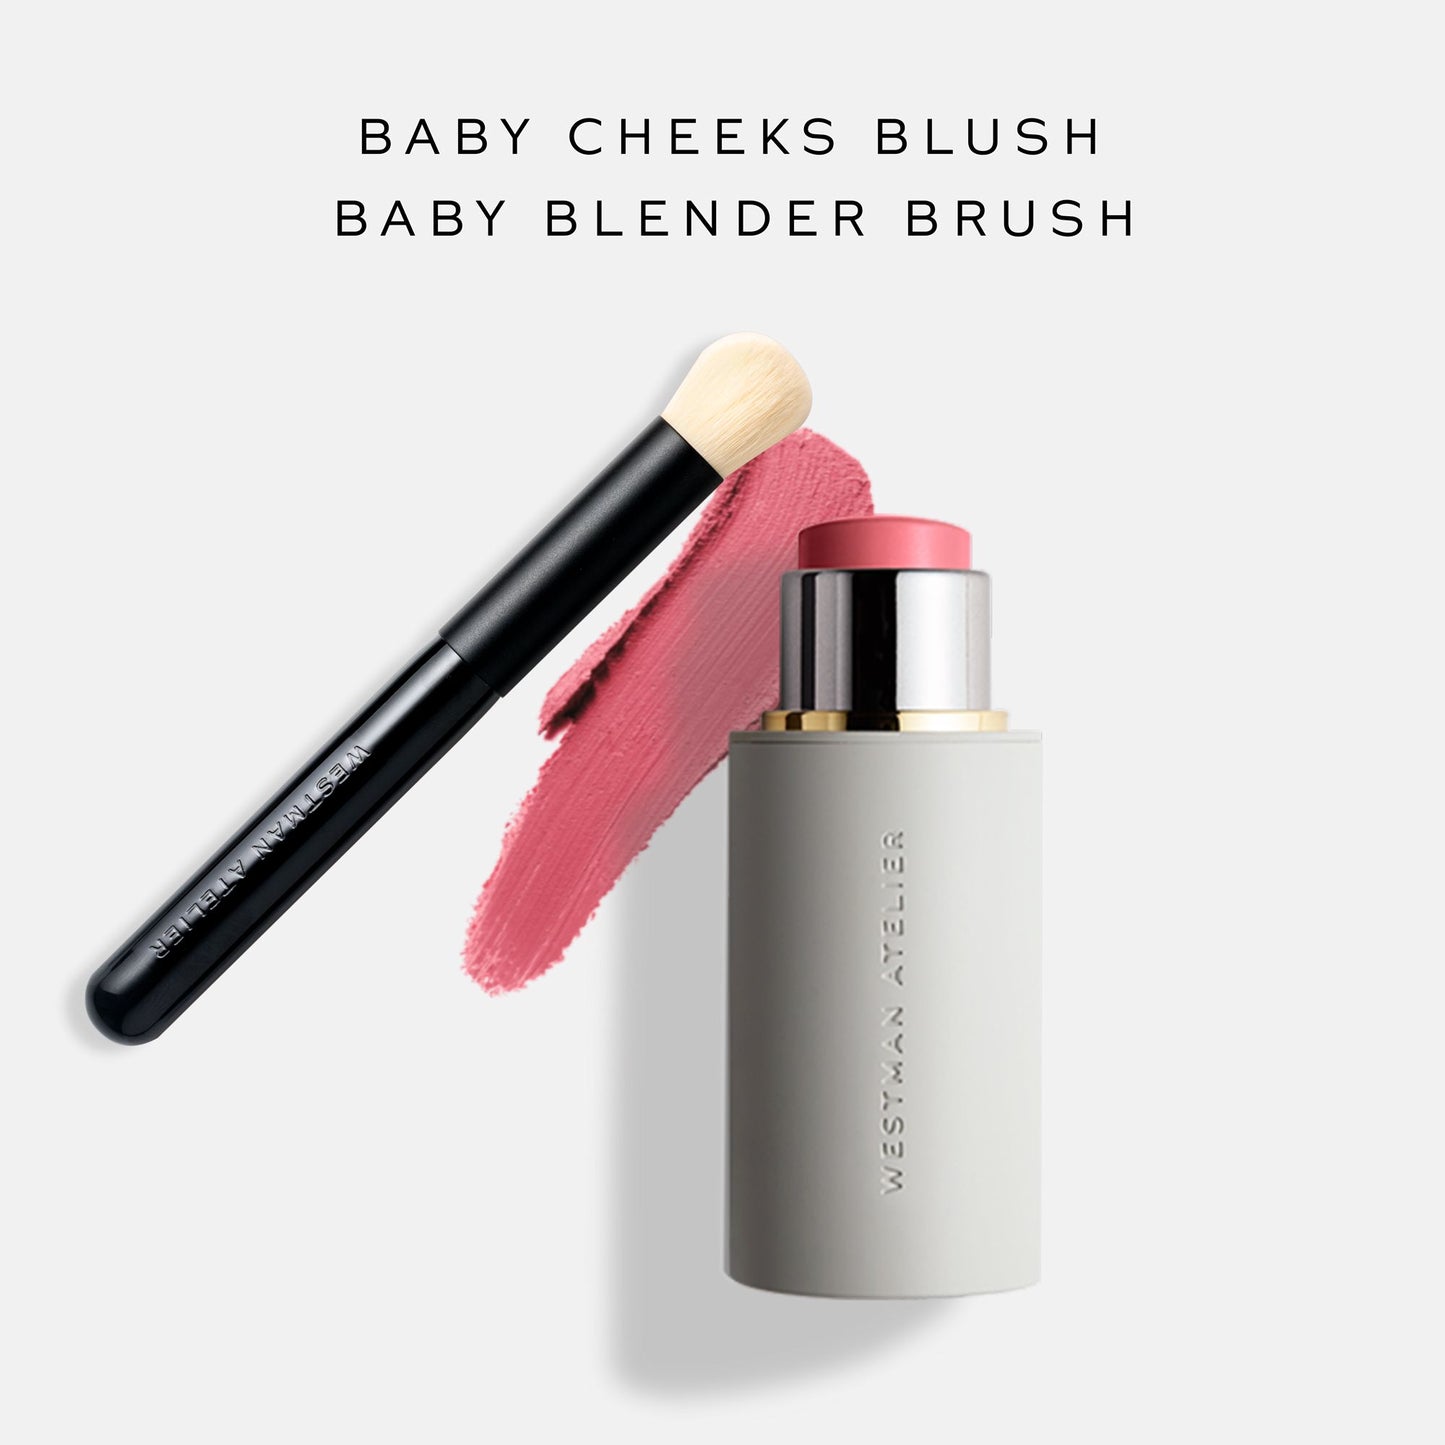 Baby Blender Brush